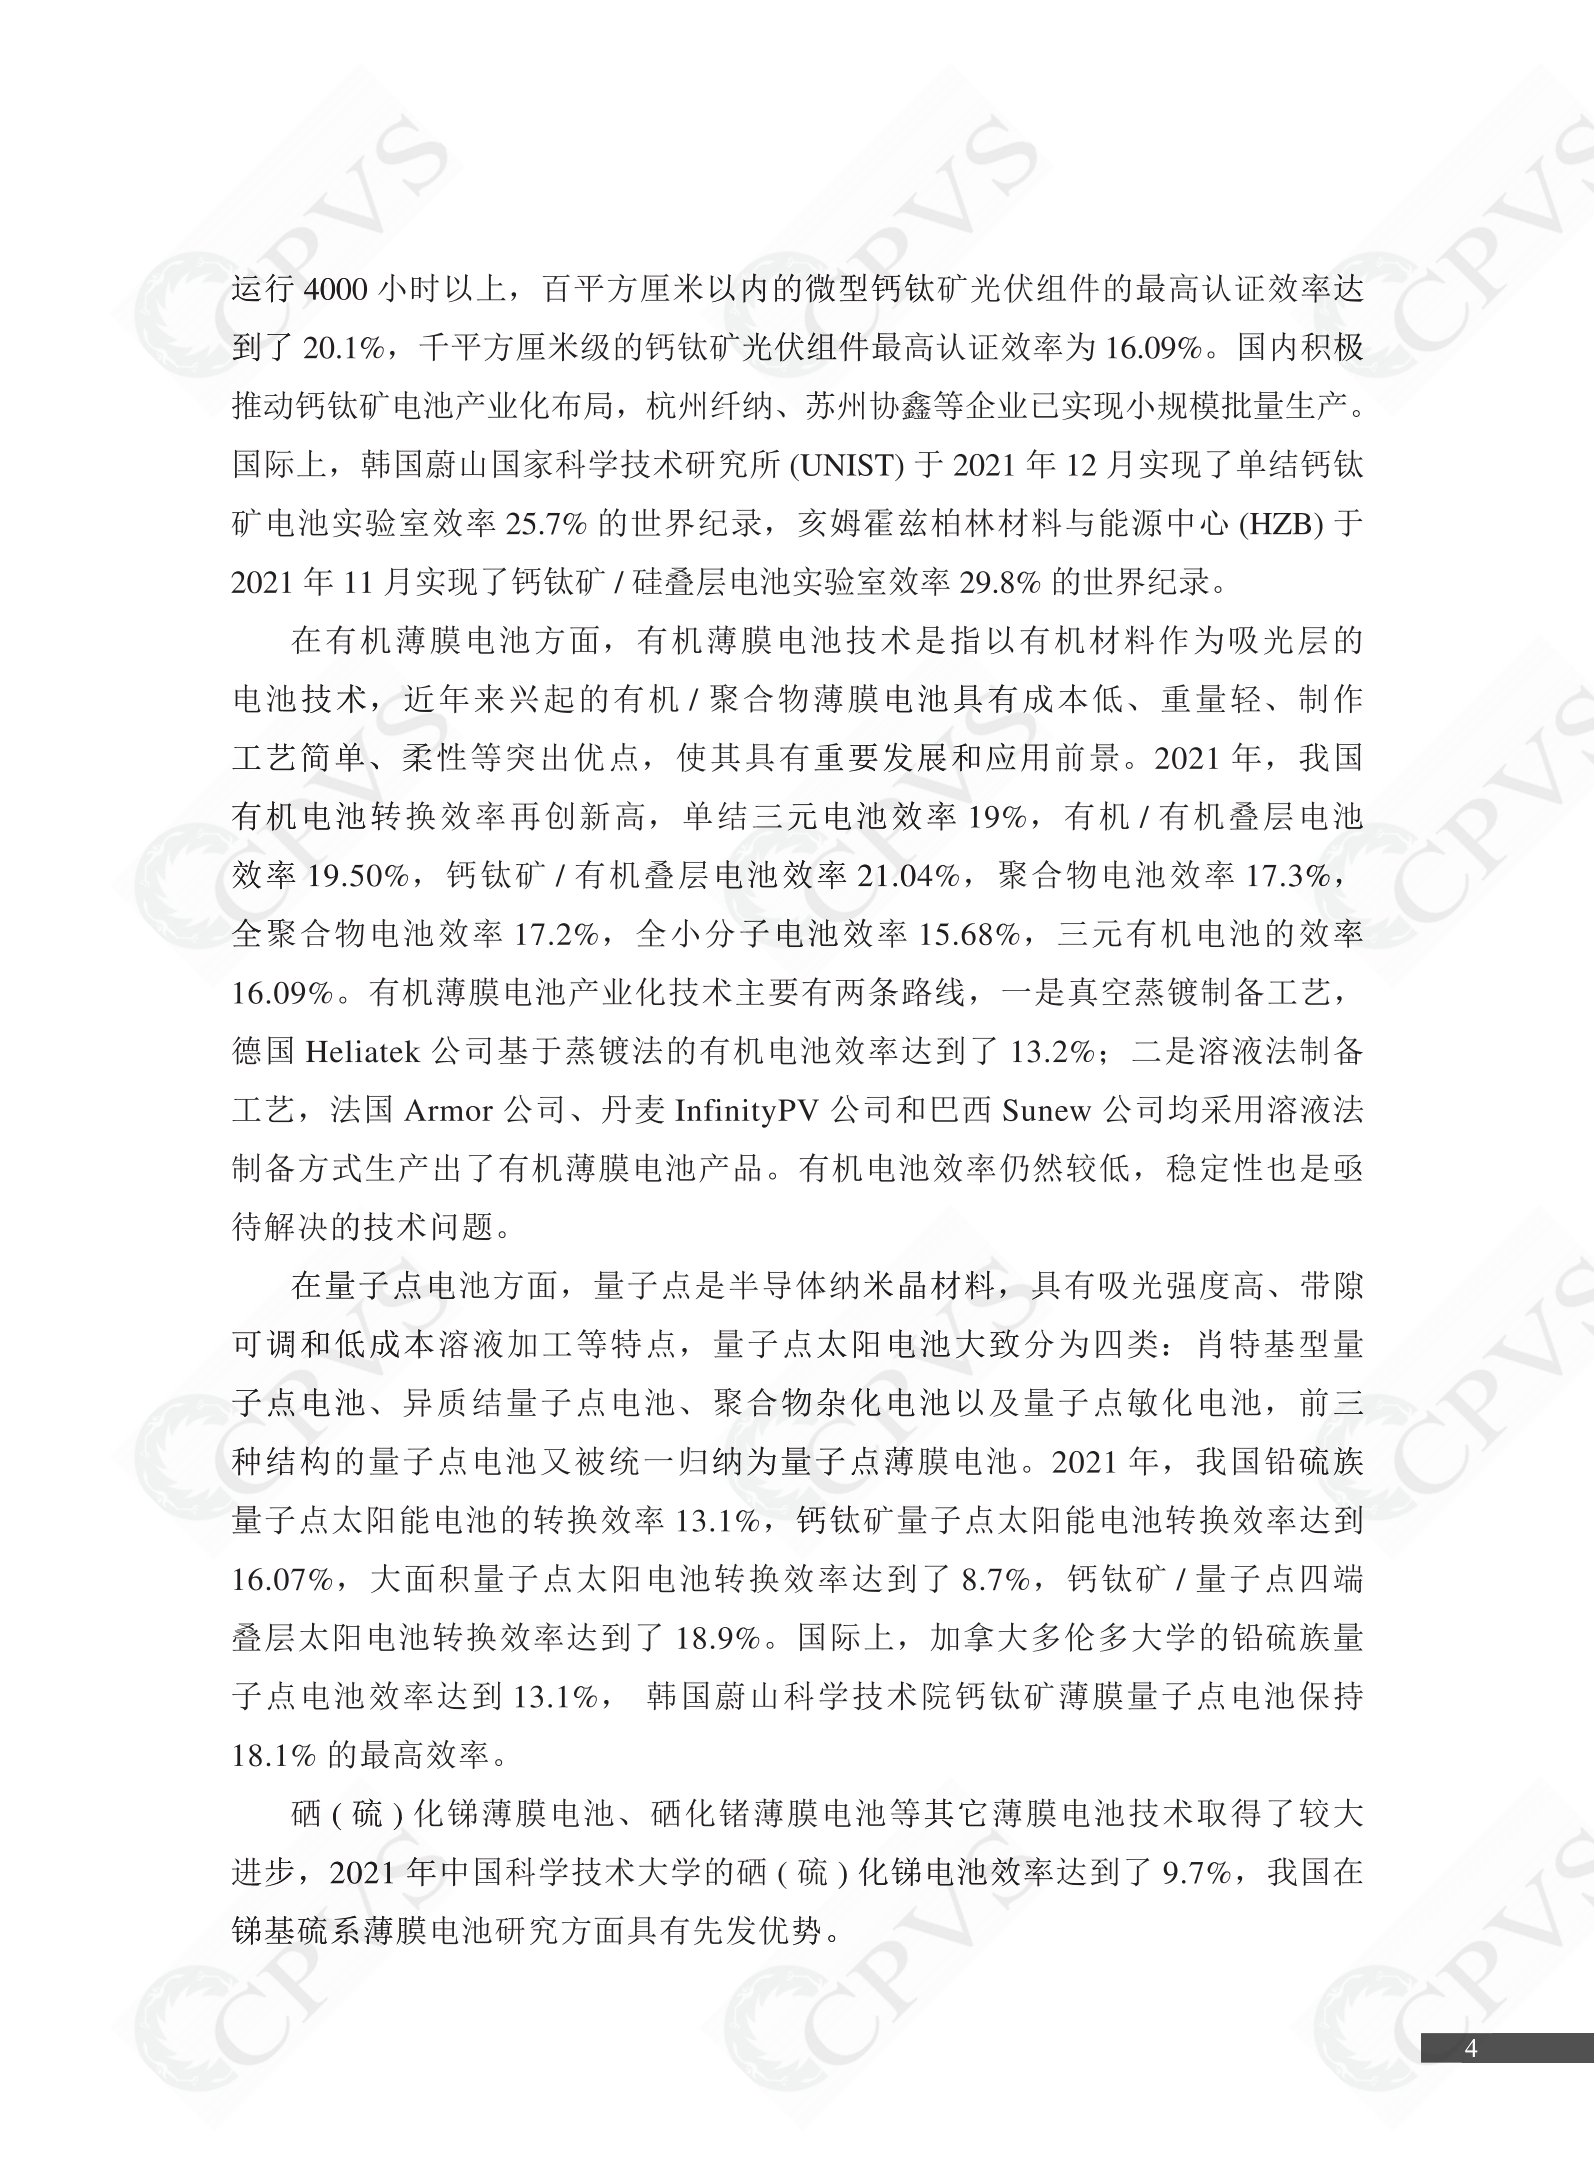 2022年中国光伏技术发展报告简版(1)_07.png